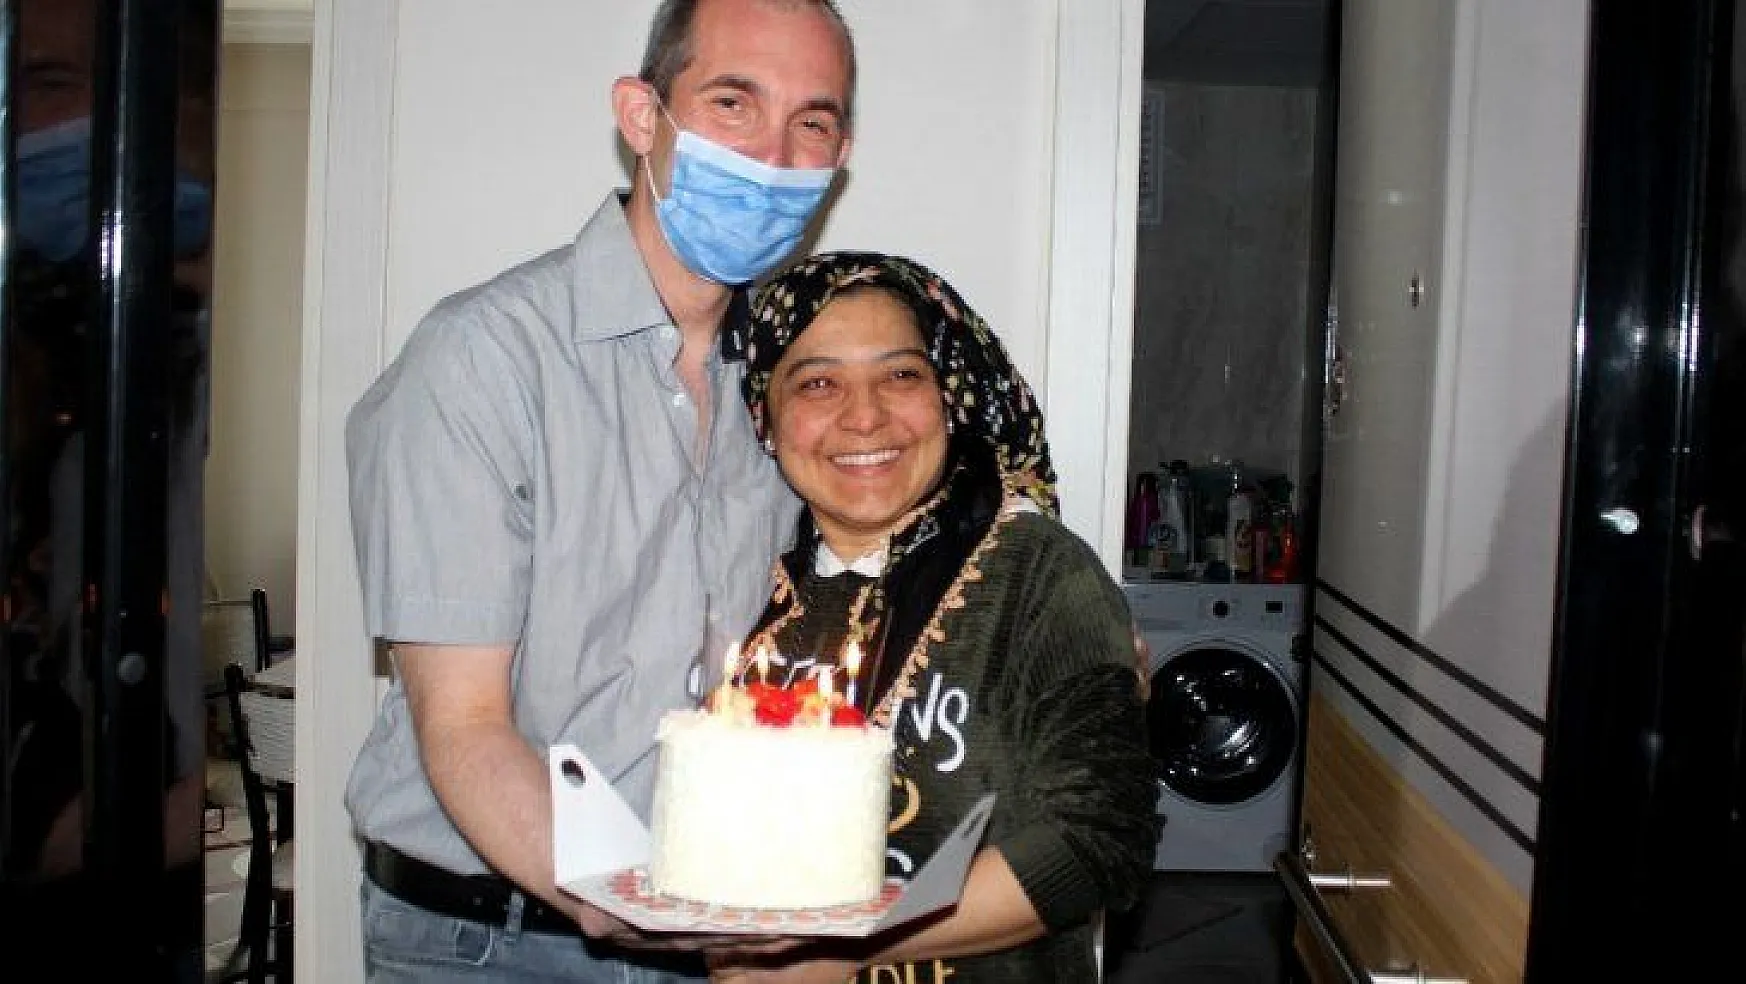 Evden çıkamayan çift belediye başkanından doğum günü pastası istedi